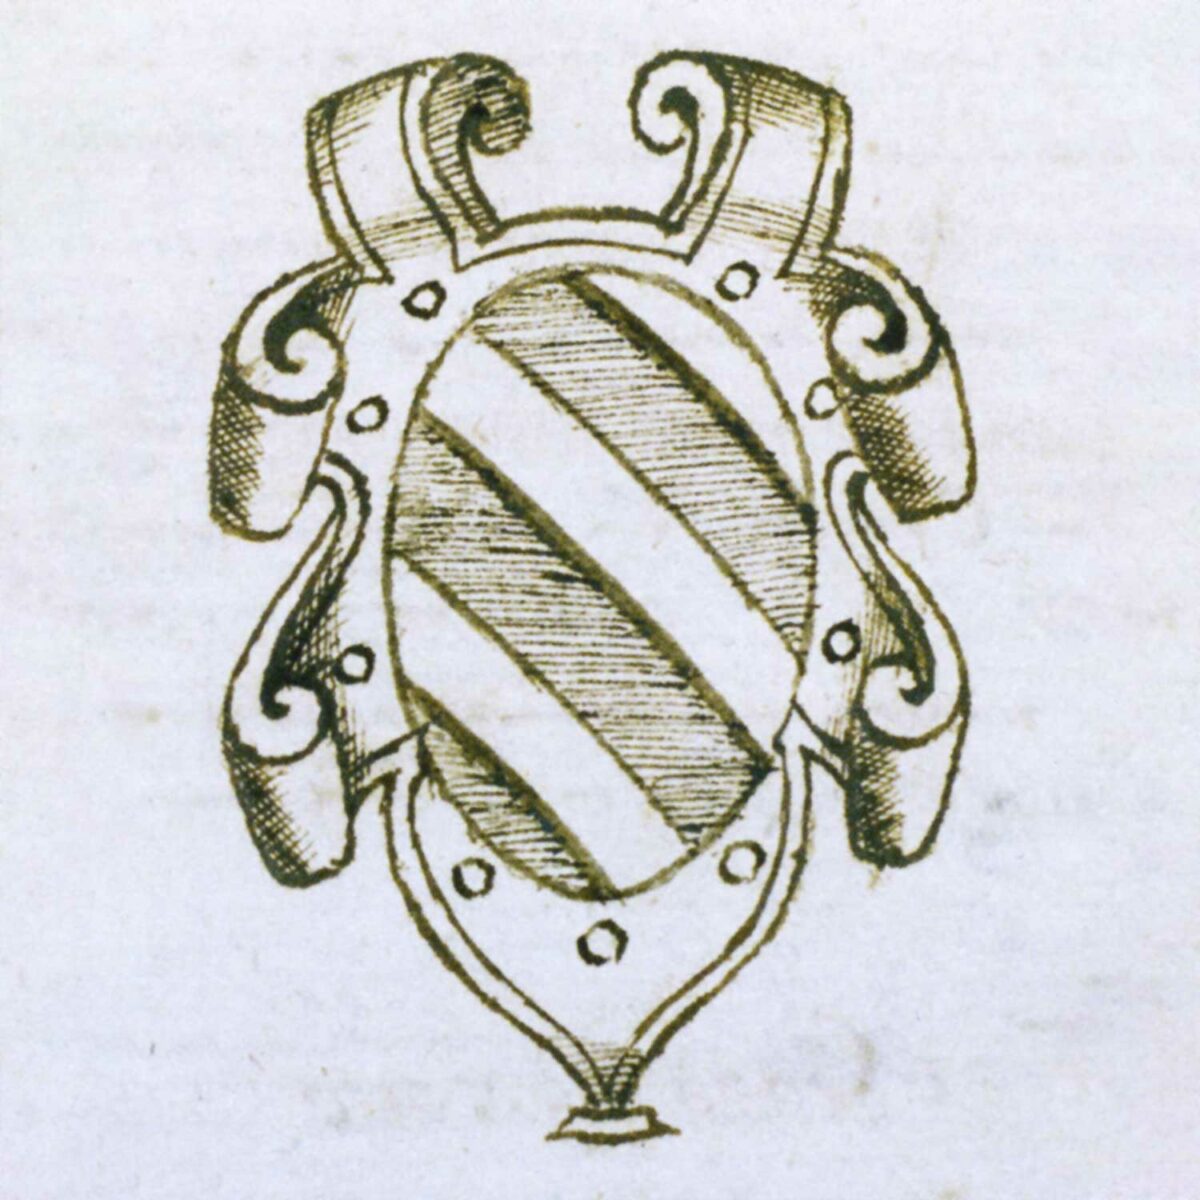 Stemma Pola - Genealogie trevigiane, voce Castel Pola - XVI secolo di Nicolò Mauro, particolare dell’albero genealogico